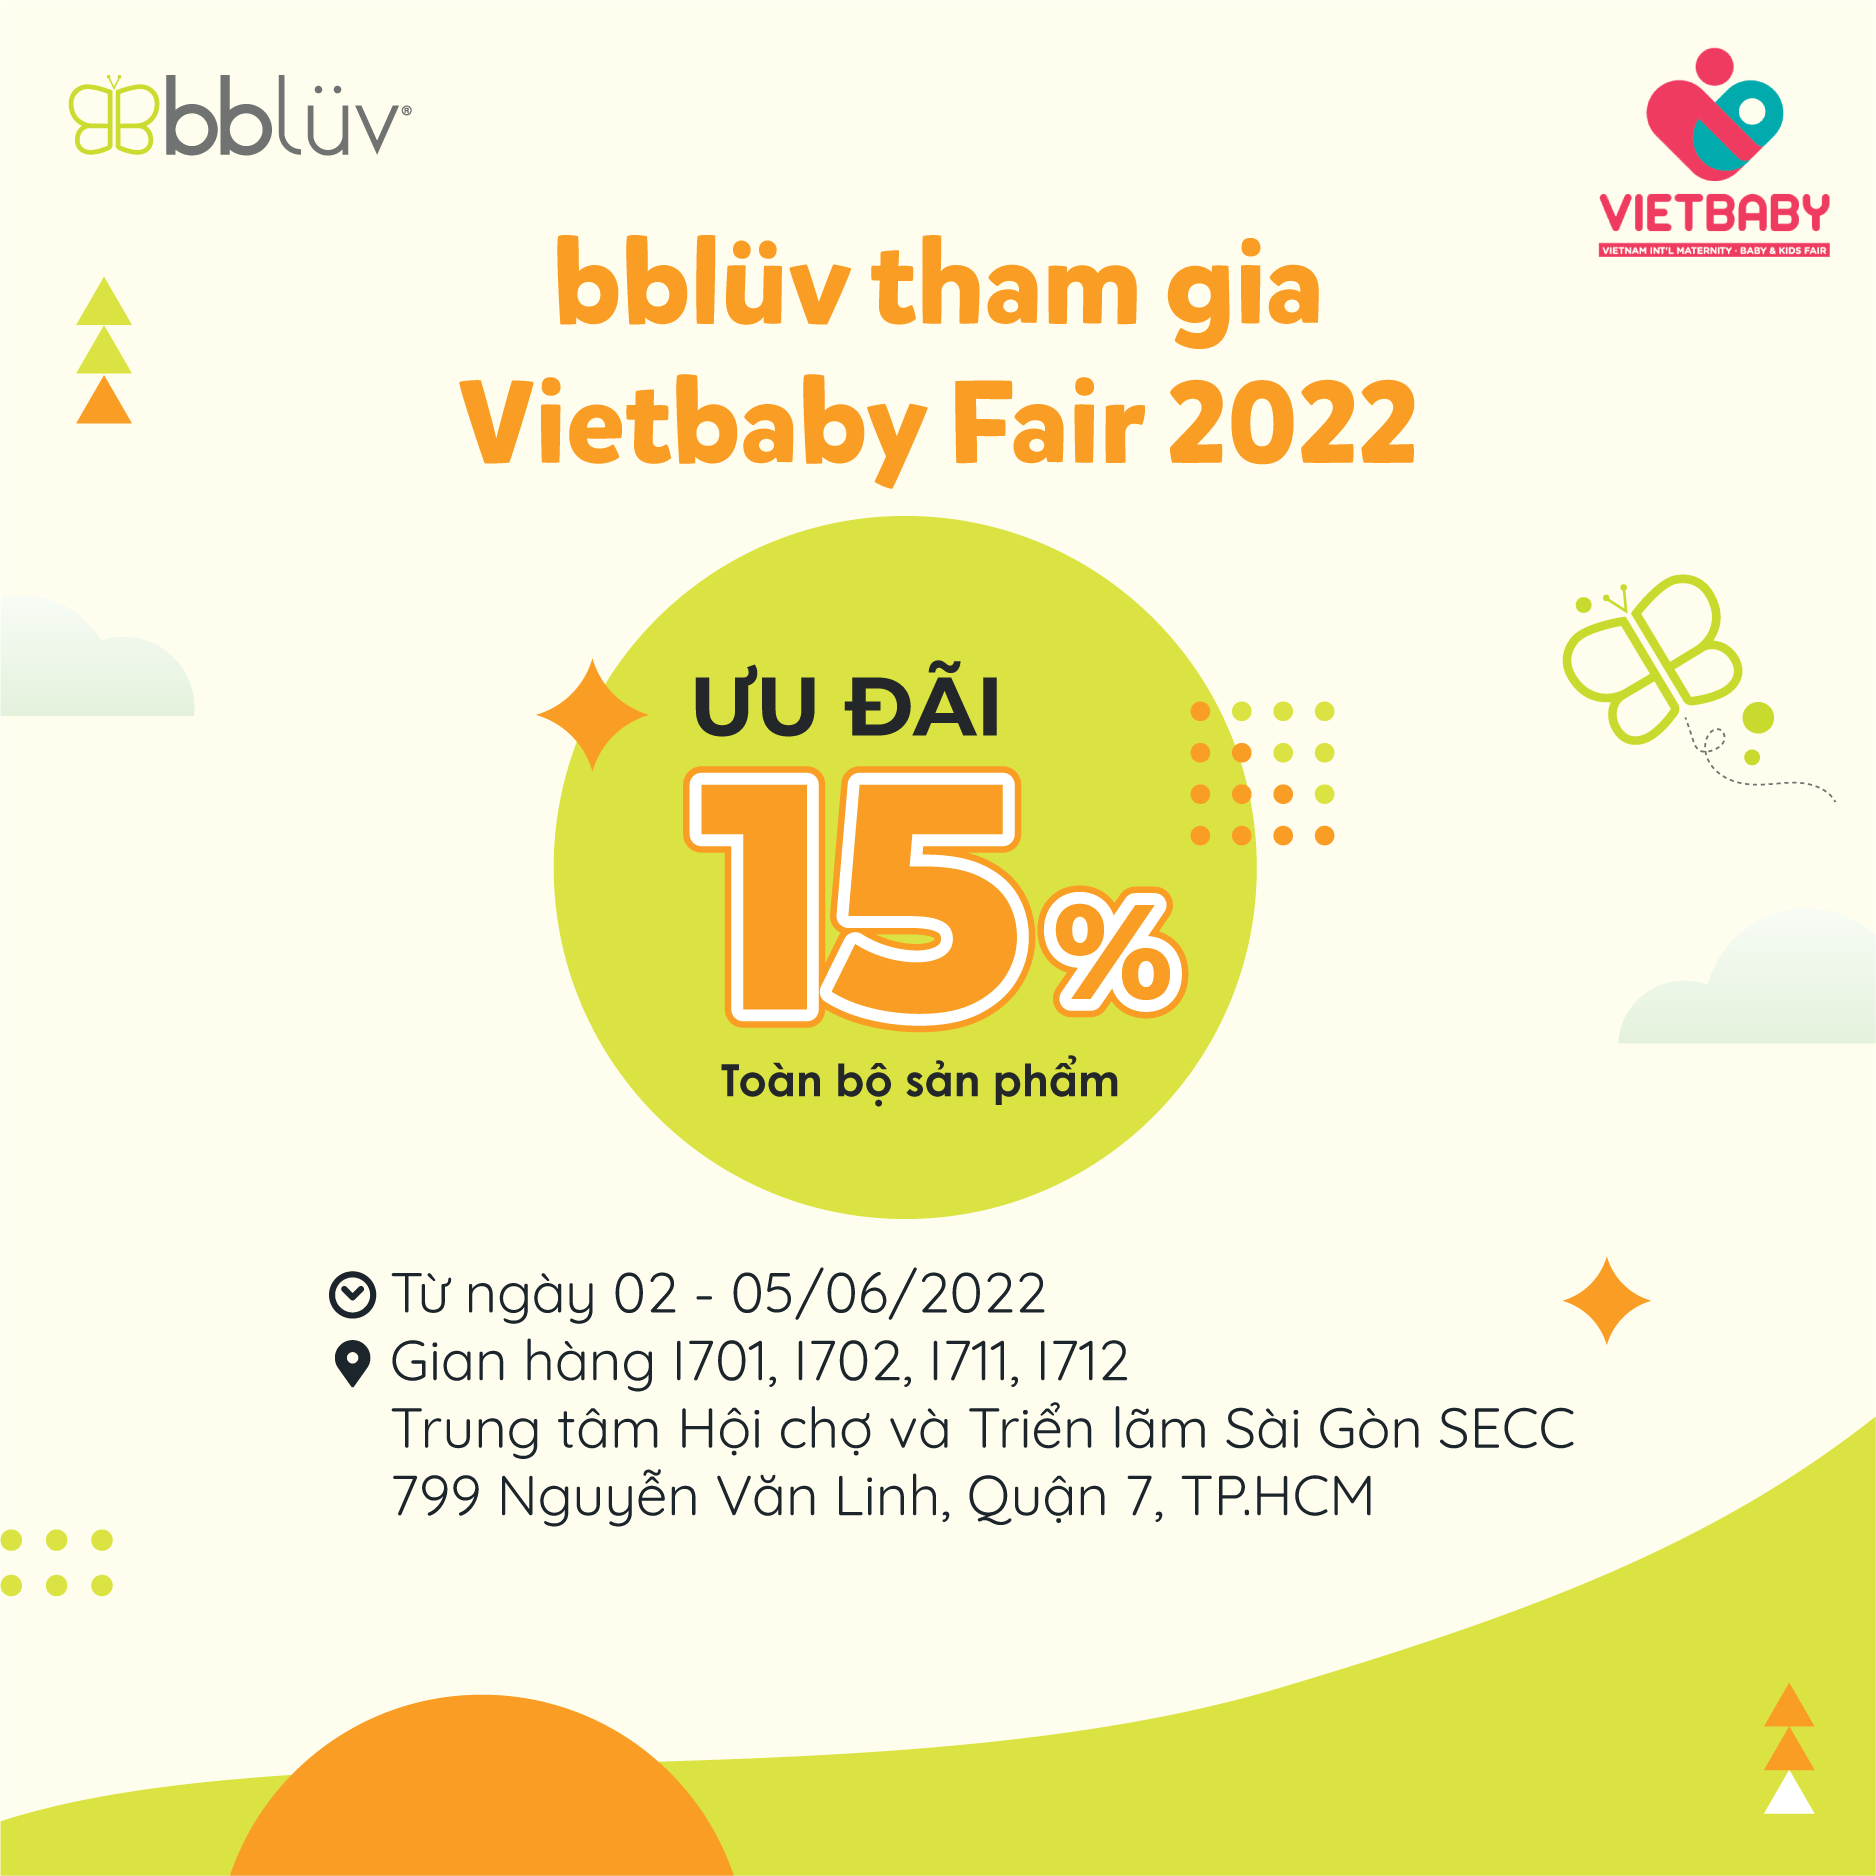 bbluv tham gia Vietbaby Fair 2022